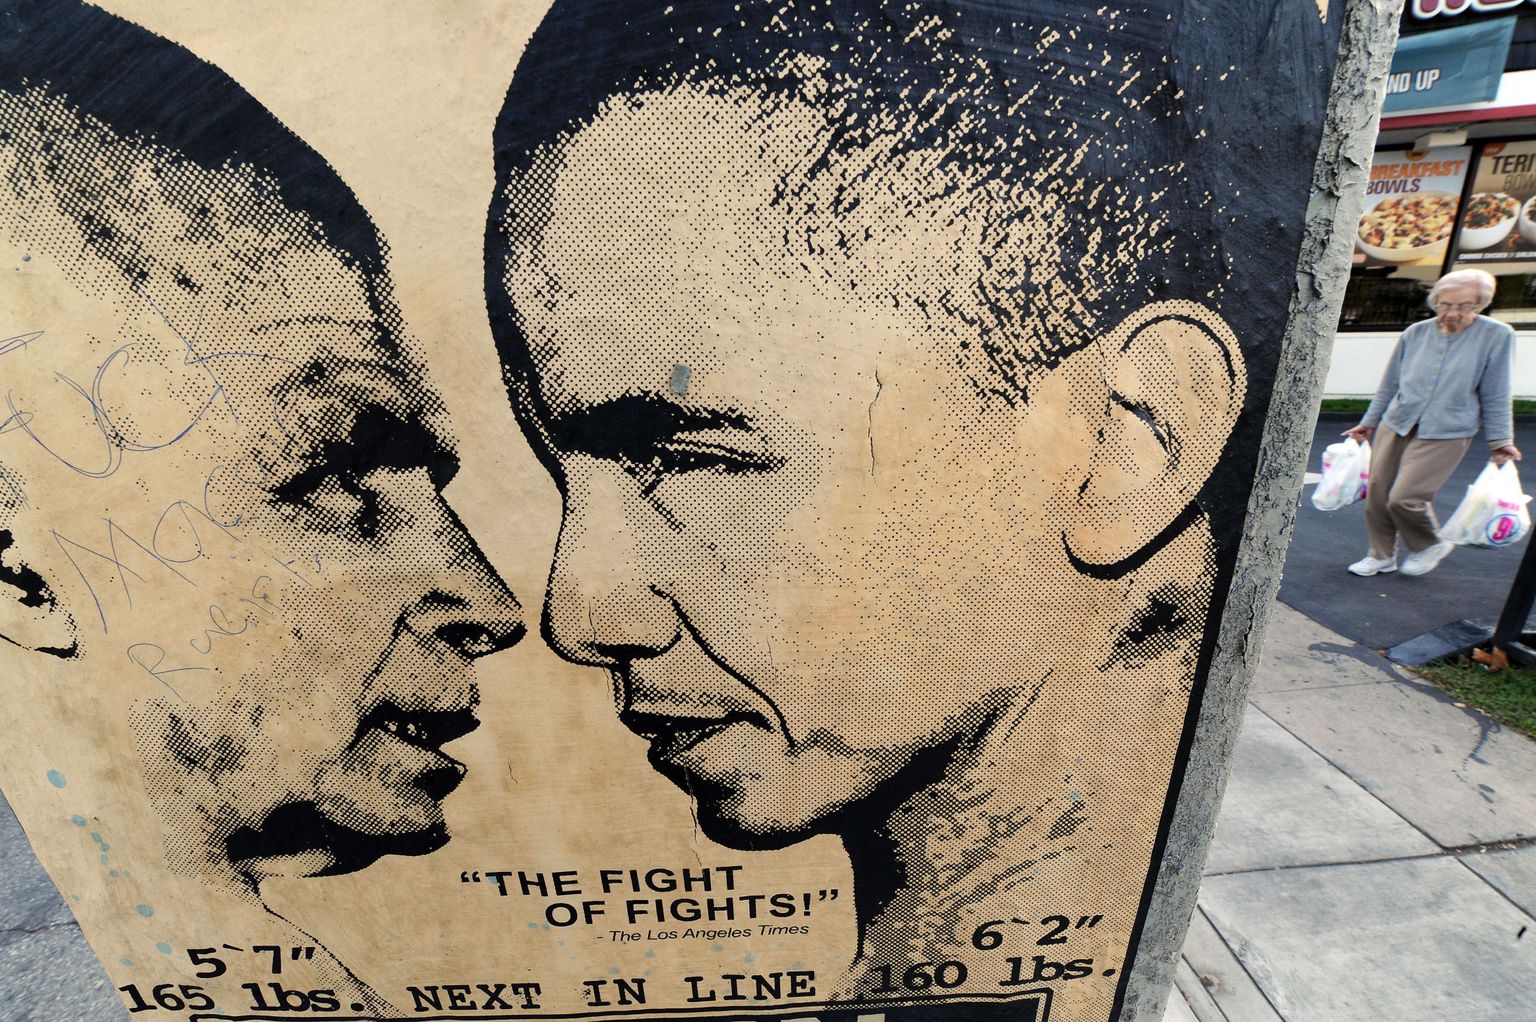 John McCaini ja Barack Obamat kujutav plakat.